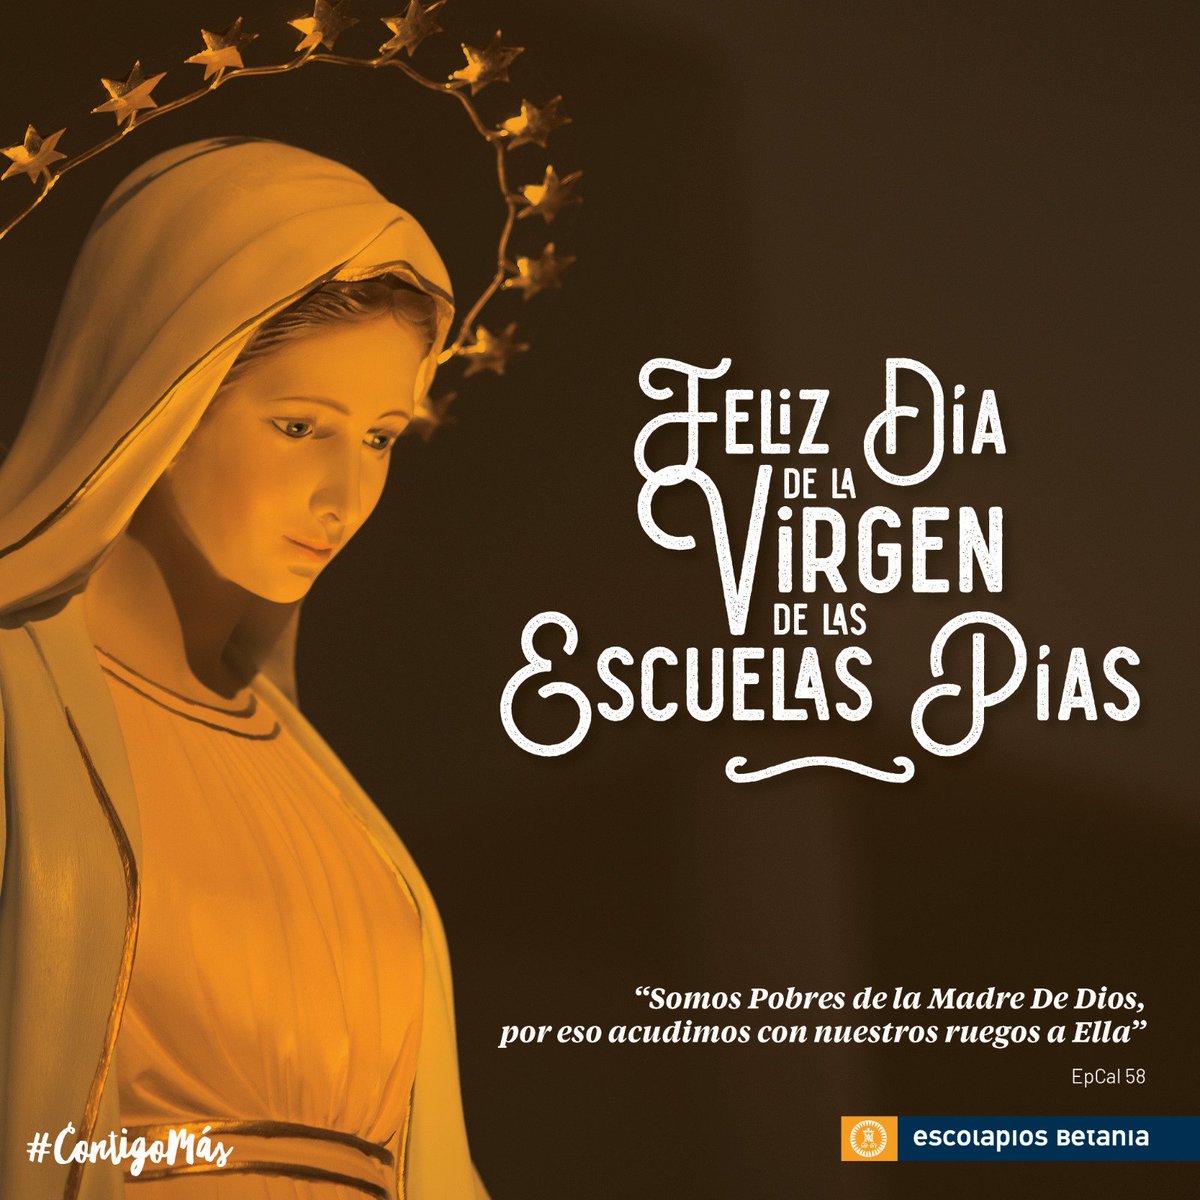 “Somos Pobres de la Madre De Dios, por eso acudimos con nuestros ruegos a Ella”. EpCal 58. Feliz día de la Virgen de las Escuelas Pías.